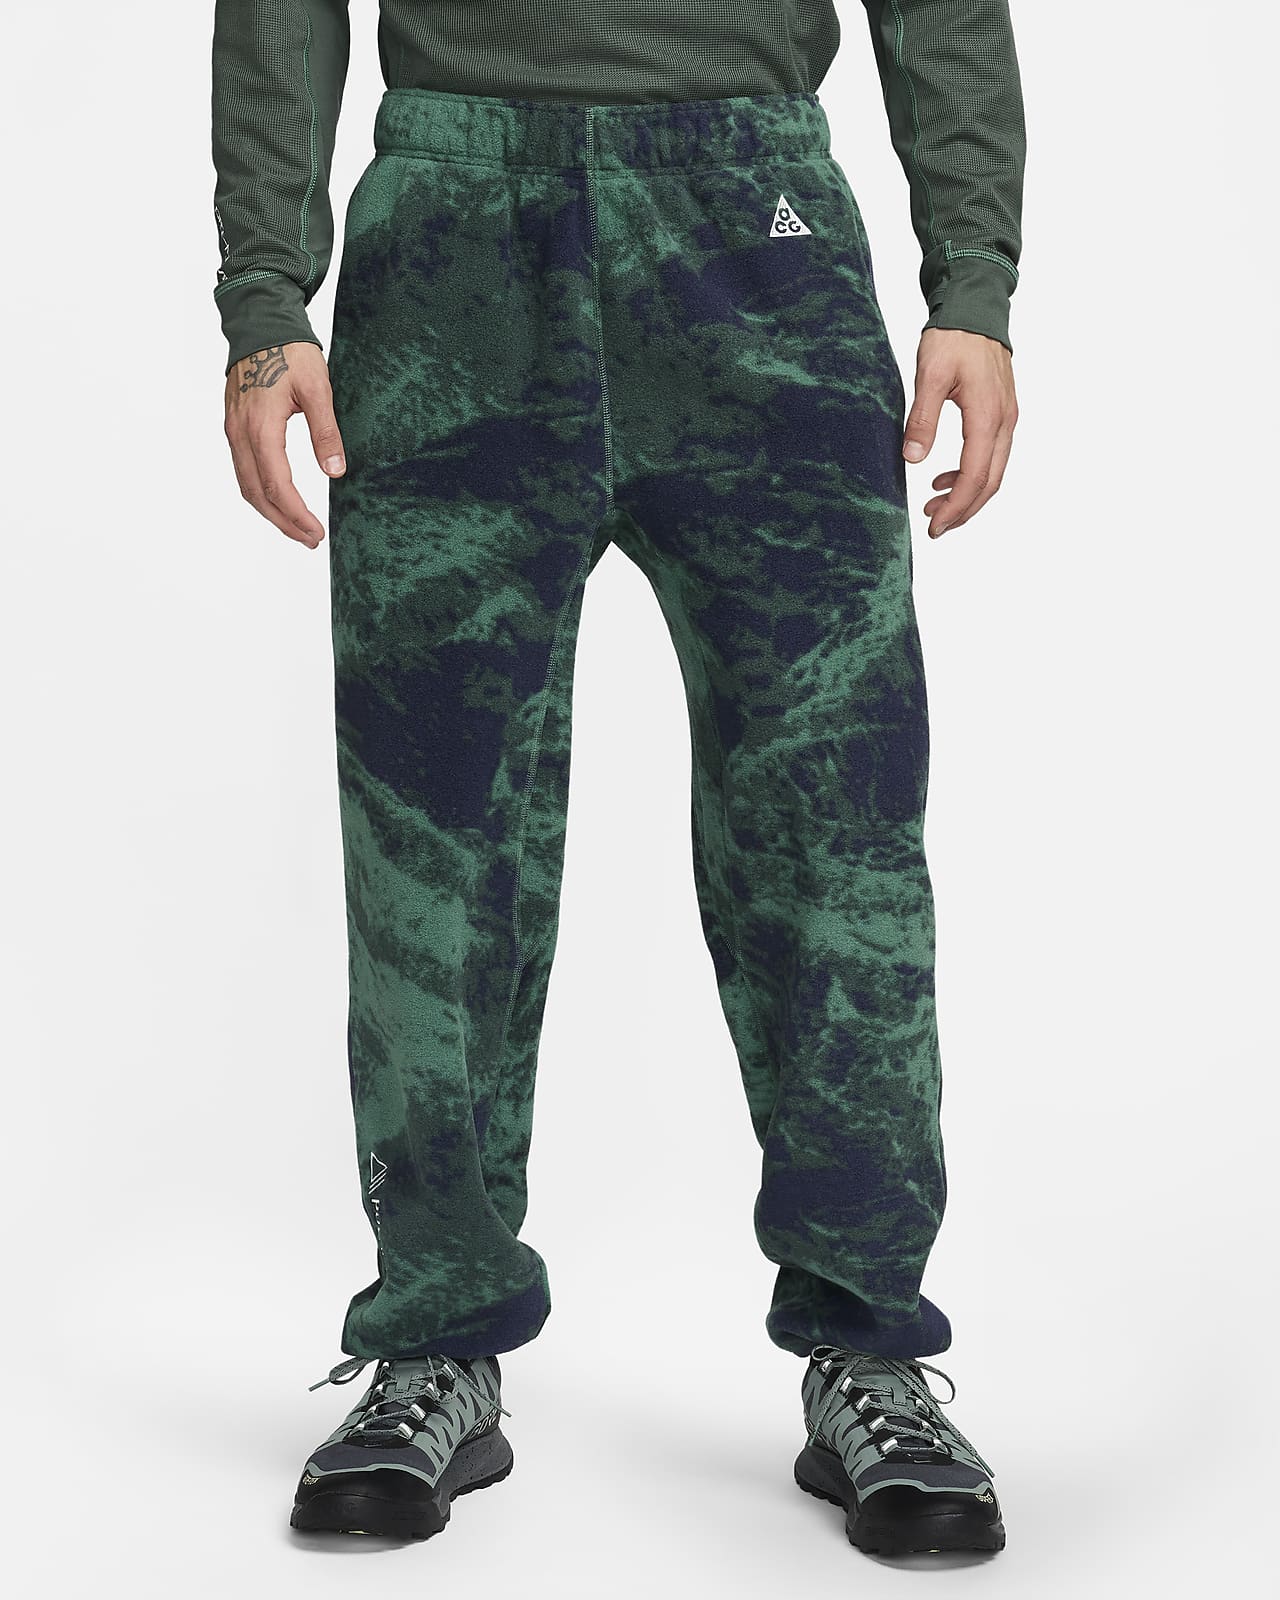 Ανδρικό παντελόνι με μοτίβο σε όλη την επιφάνεια Nike ACG "Wolf Tree"